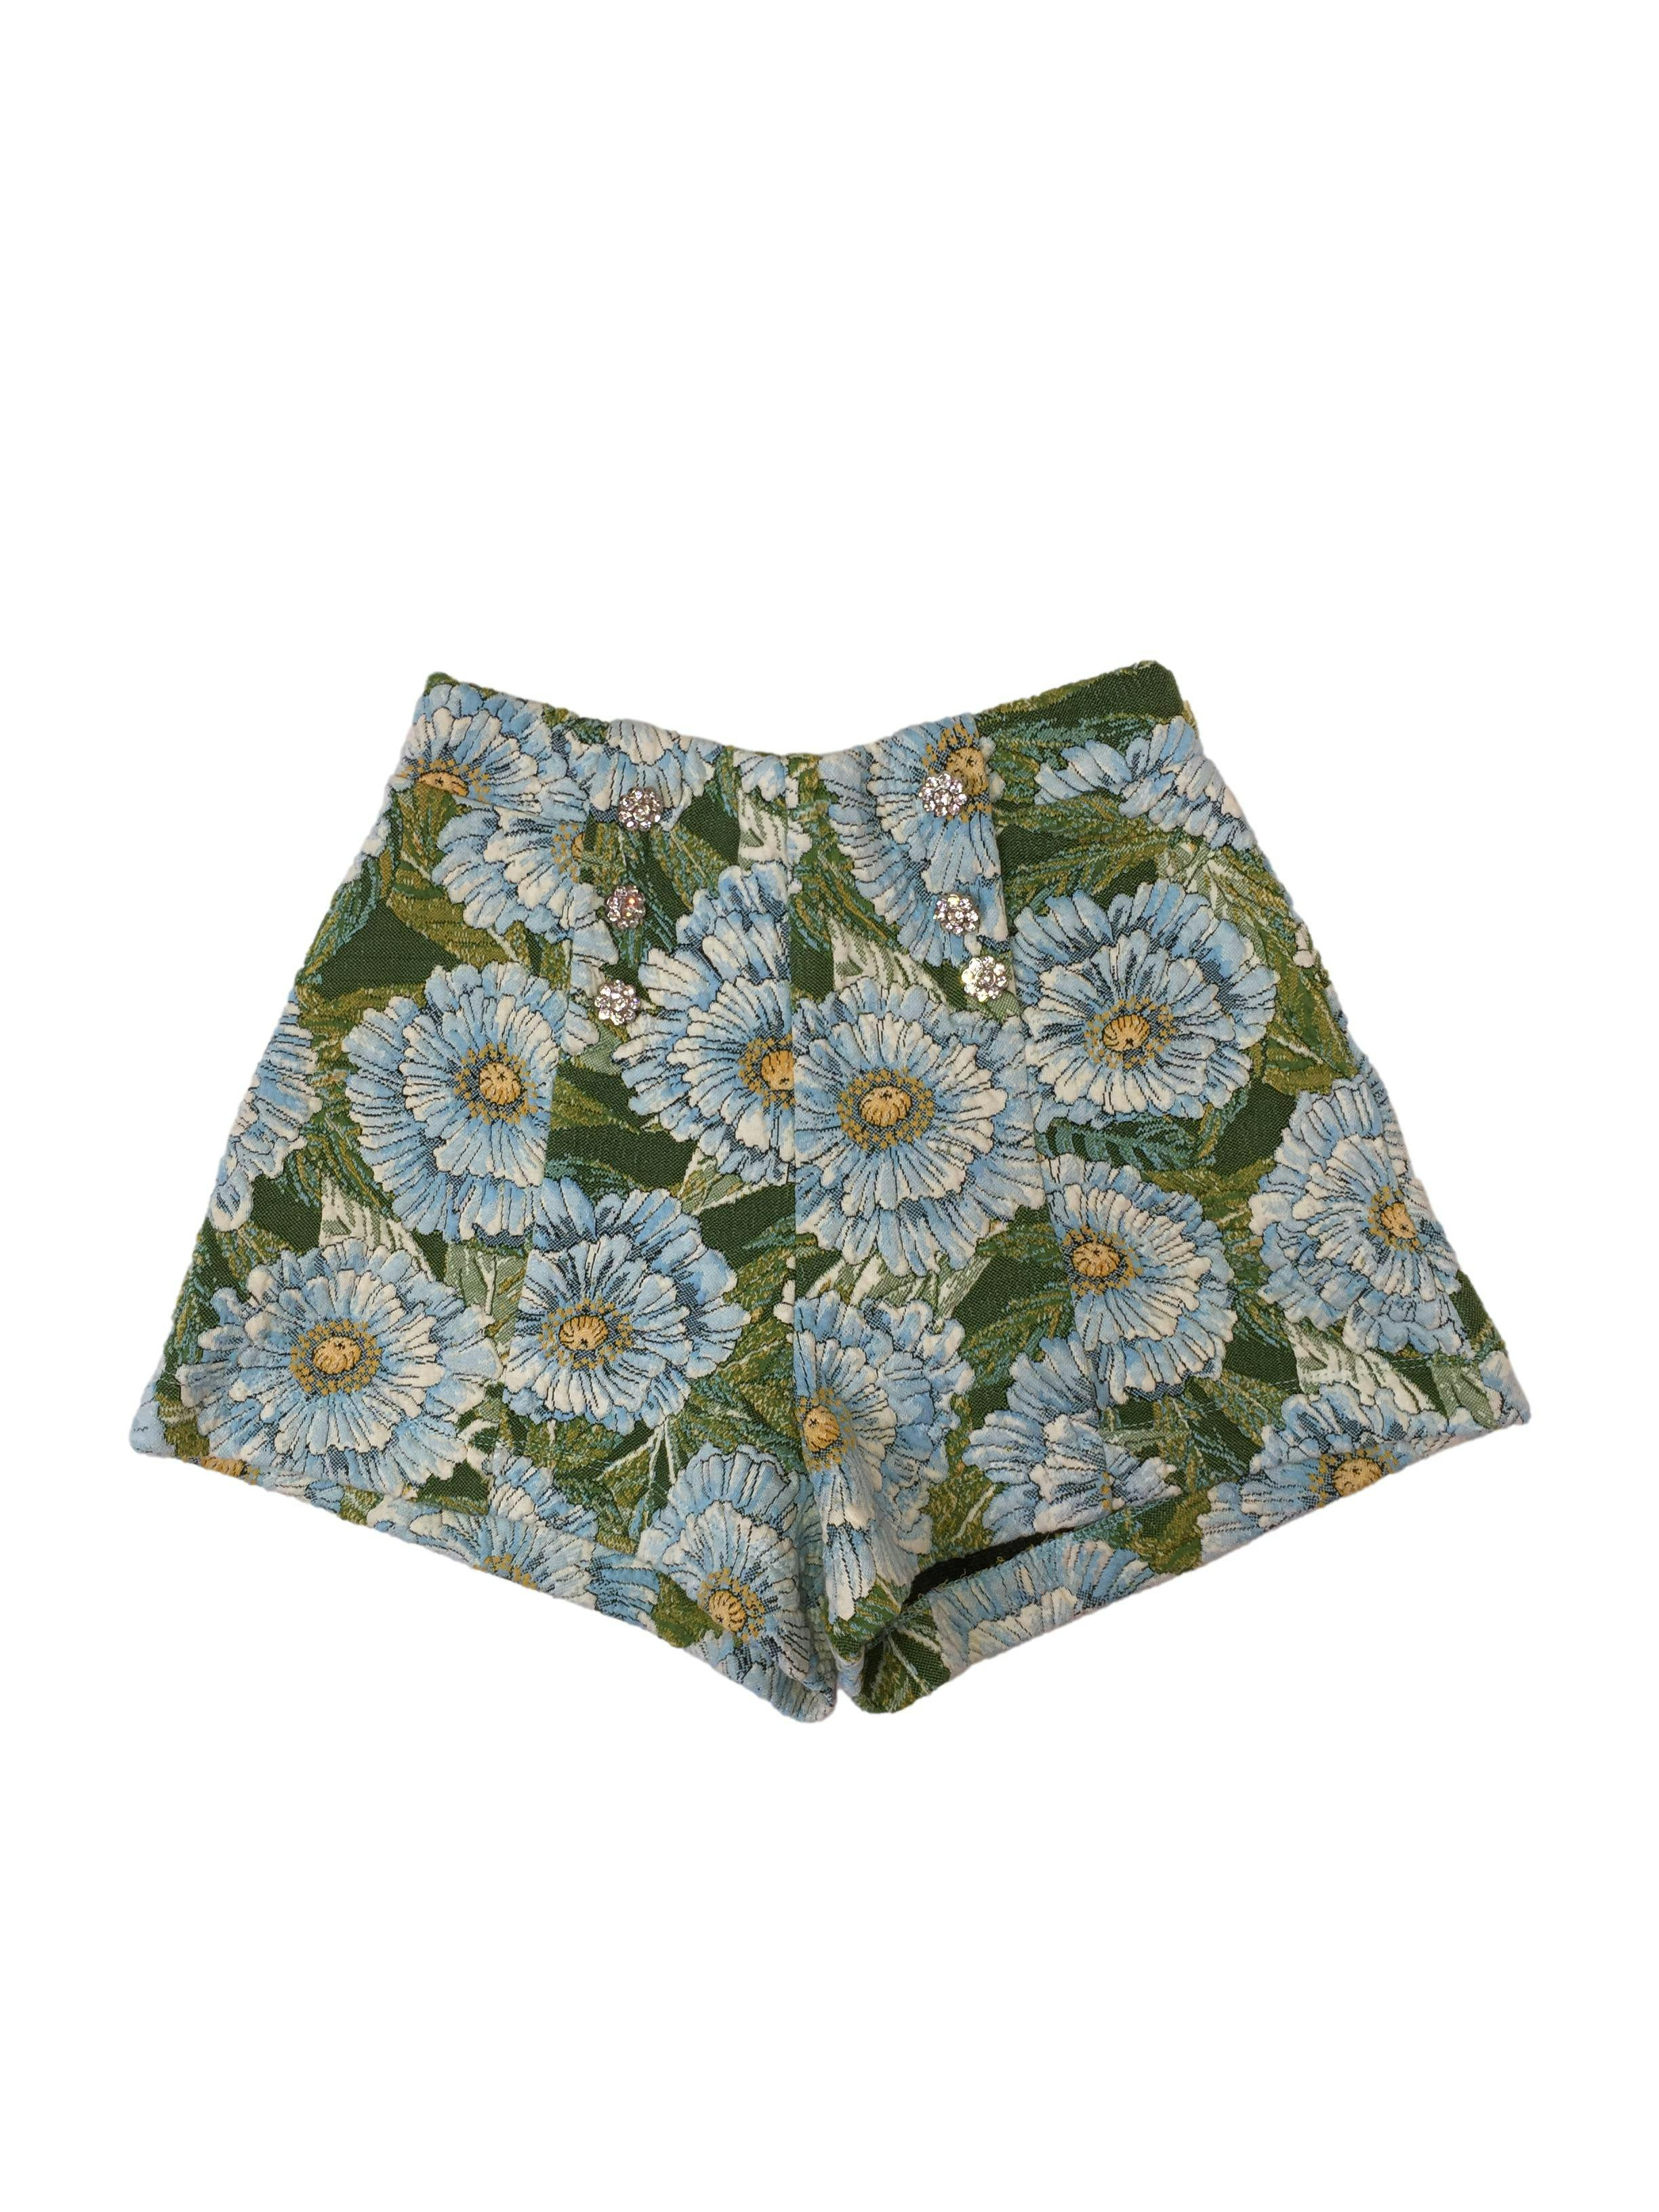 short Zara floreado azul y verde con elástico en la cintura, con pliegues, detalle de botones de flores plateadas. Cintura 64 cm. sin estirar, tiro 31 cm. Largo 31 cm. 